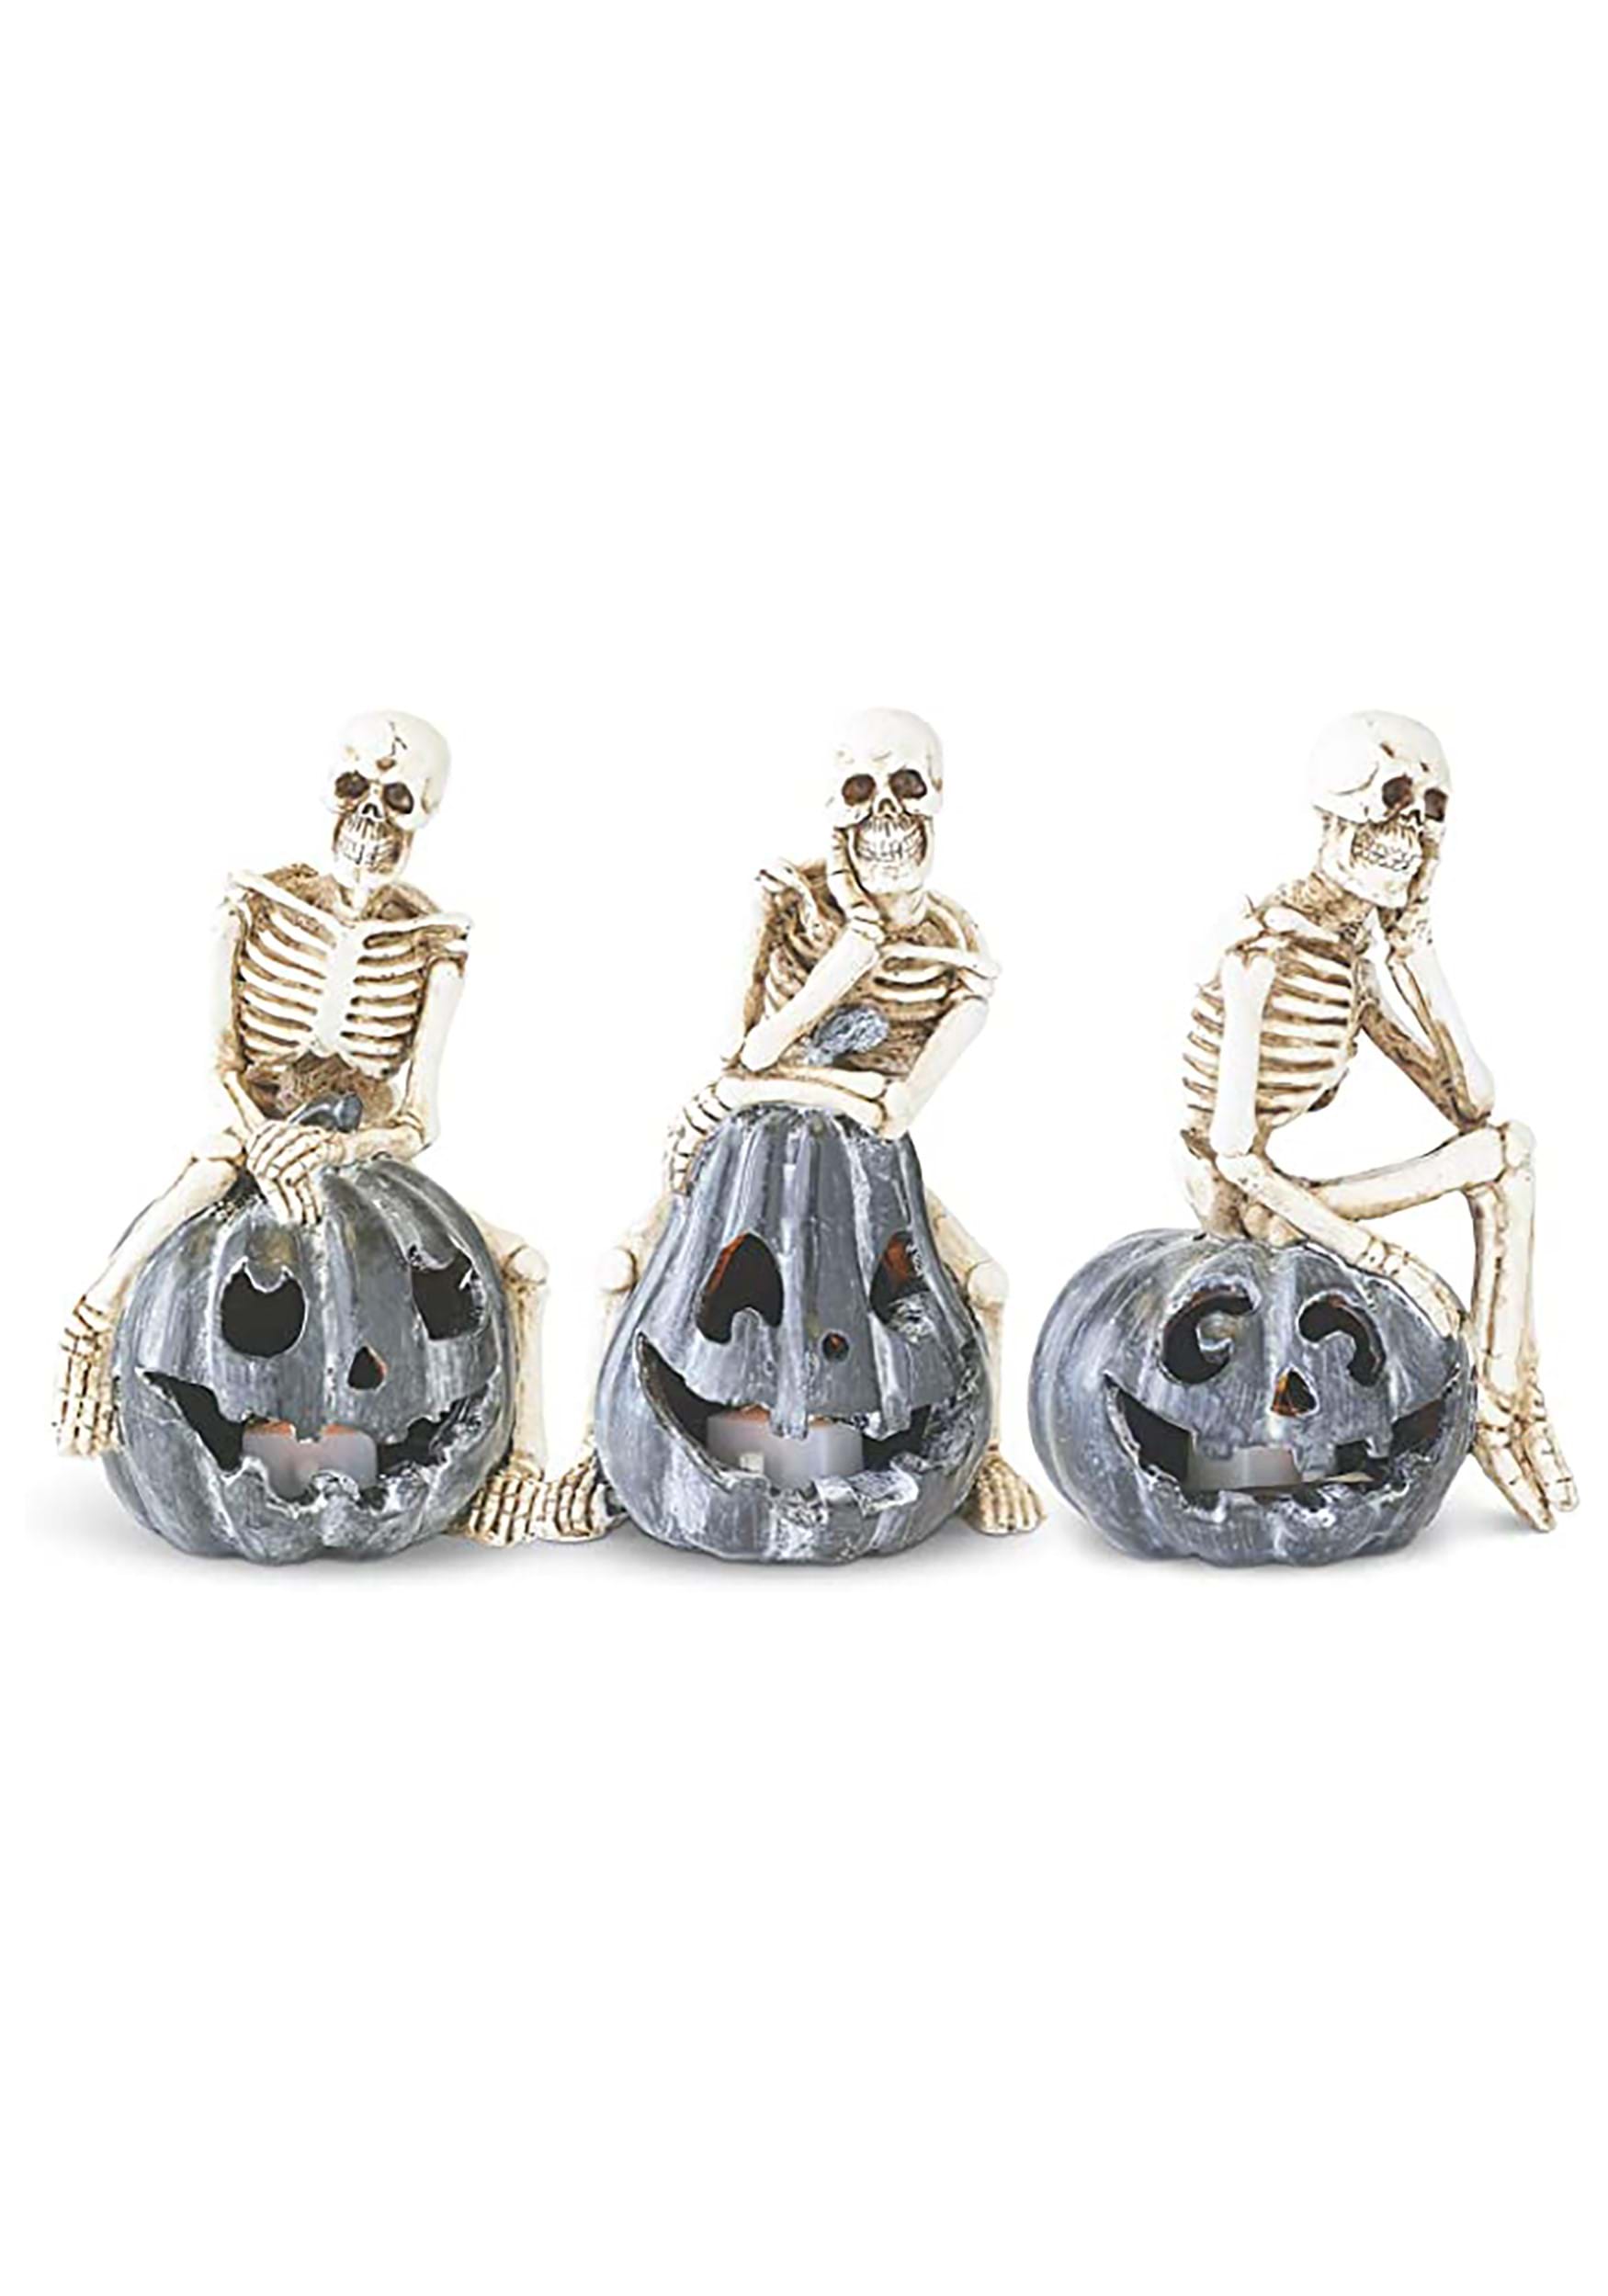 Set of 3 Skeletons Sitting on LED Jack ‘O Lantern Decoration